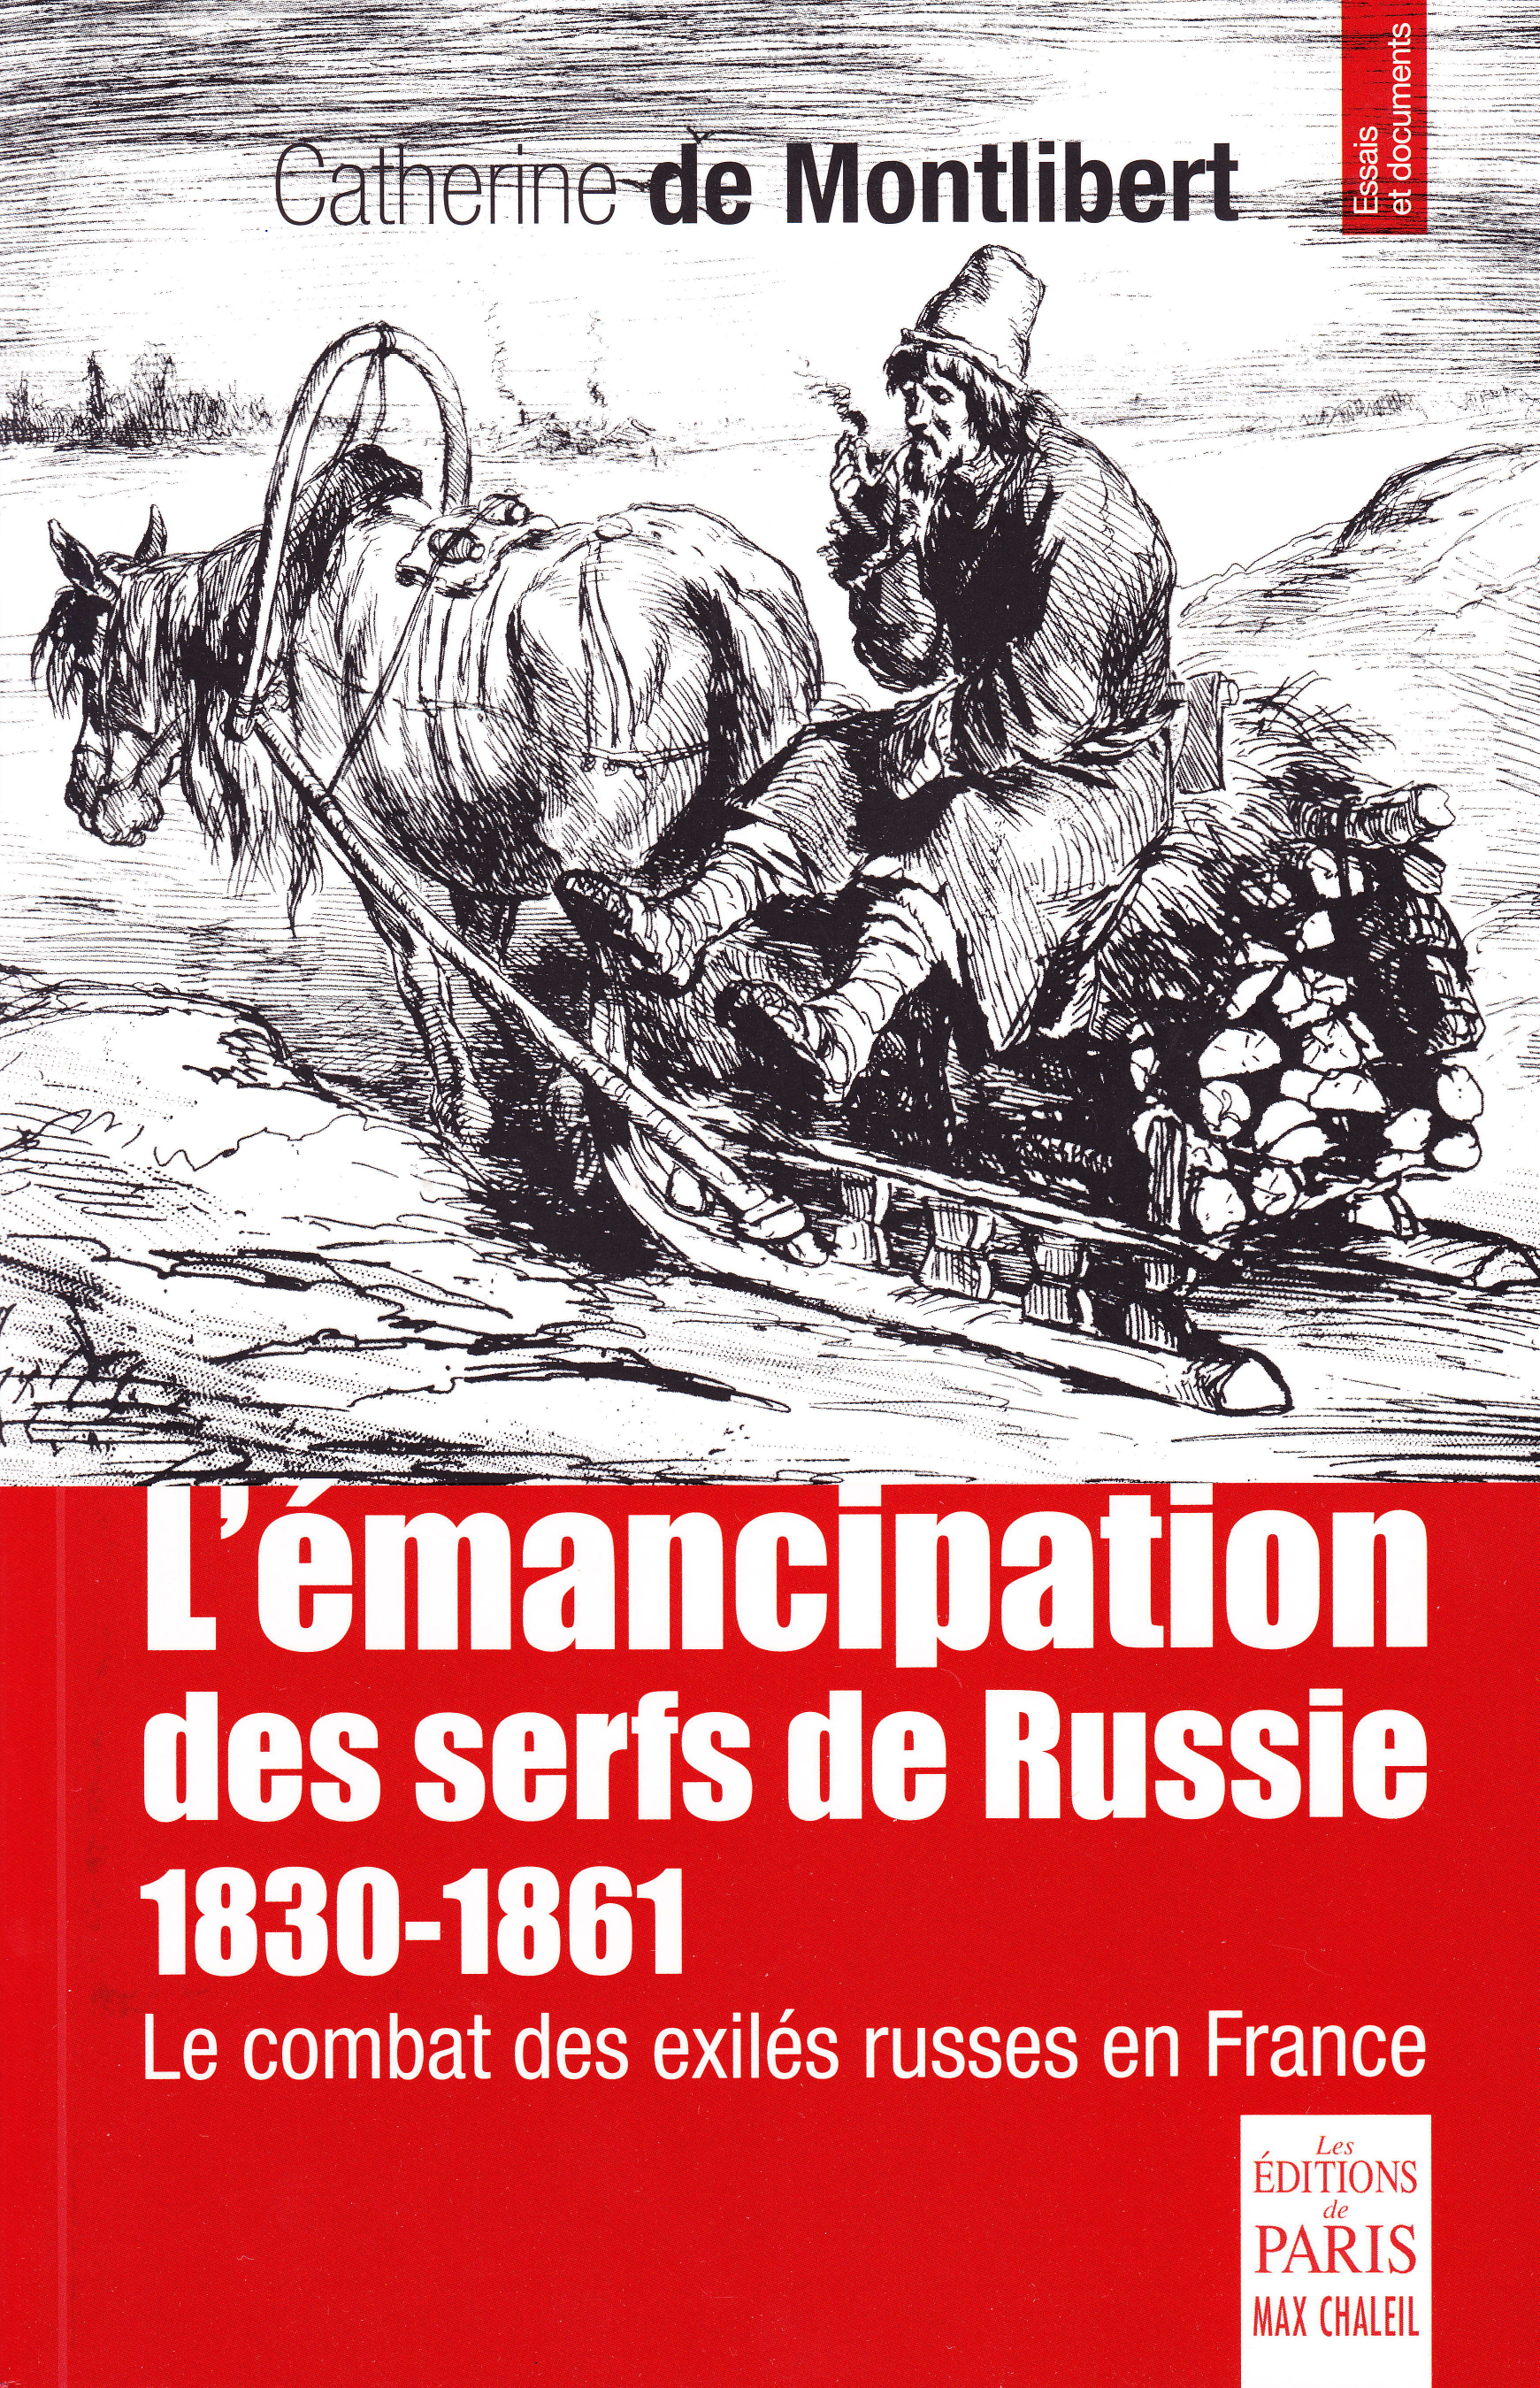 Catherine DE MONTLIBERT (2015): L'émancipation des serfs de Russie 1830-1861